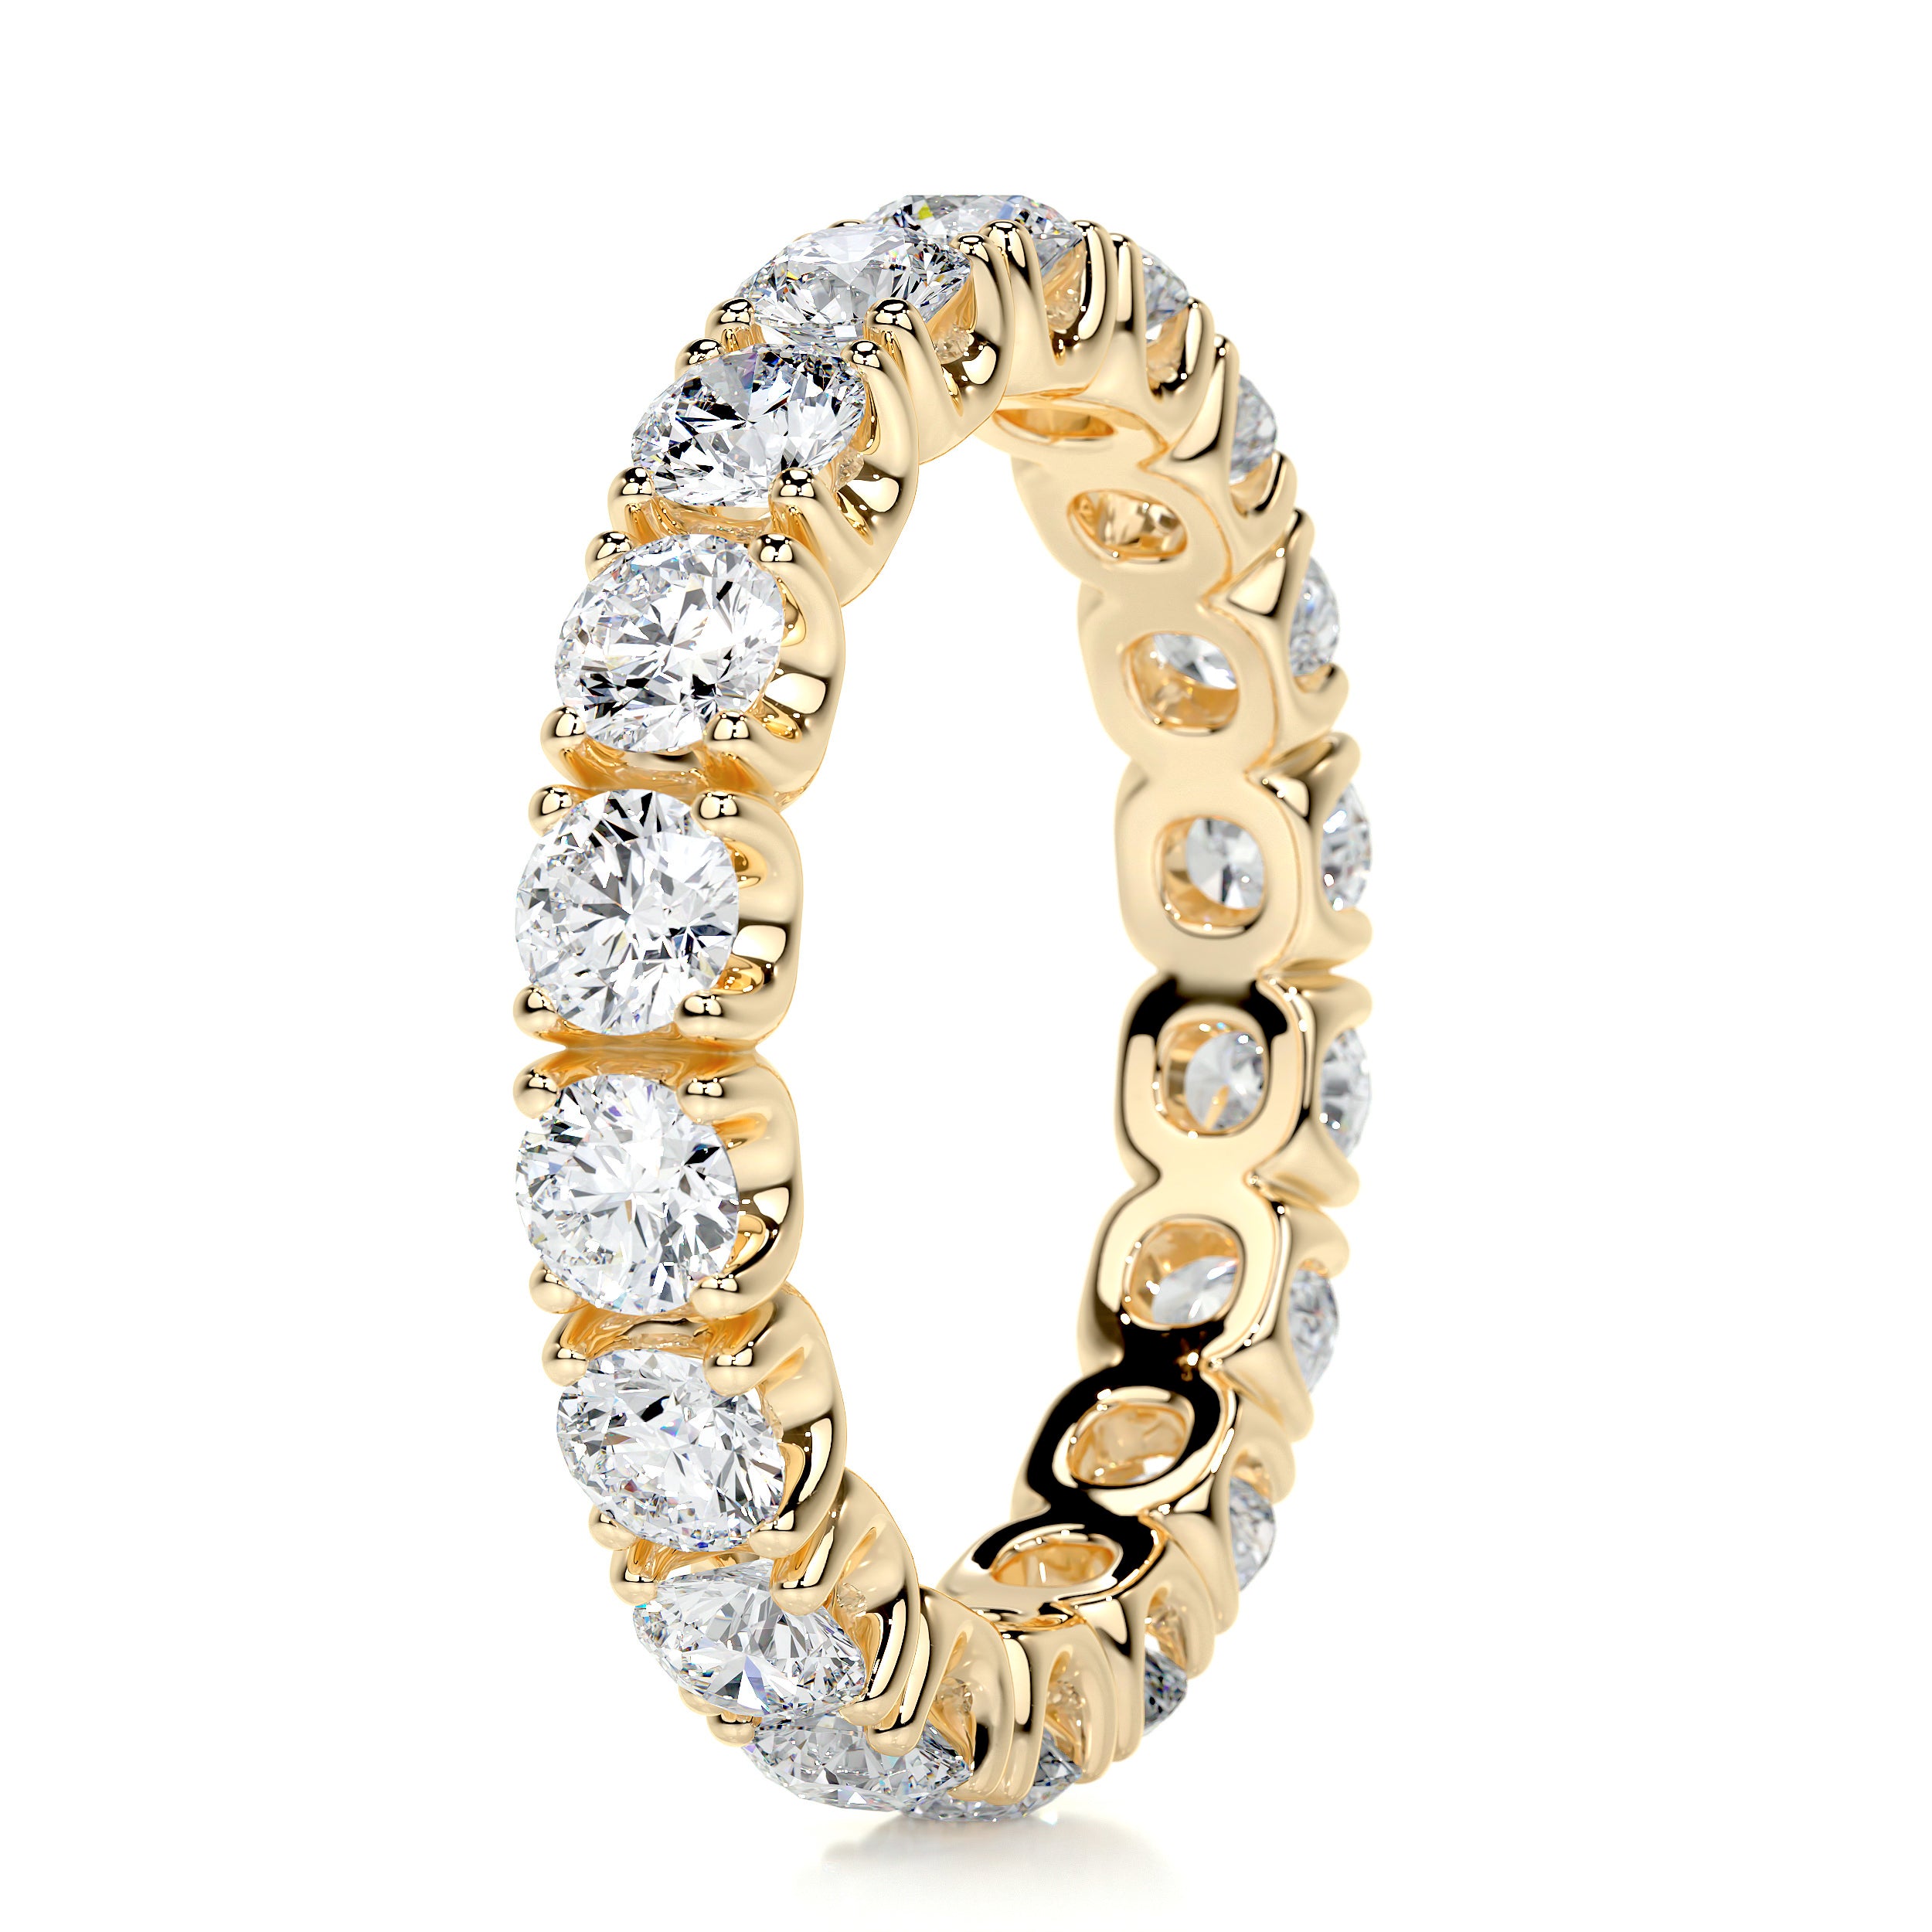 Trinity Eternity Wedding Ring   (2.4 Carat) -18K Yellow Gold